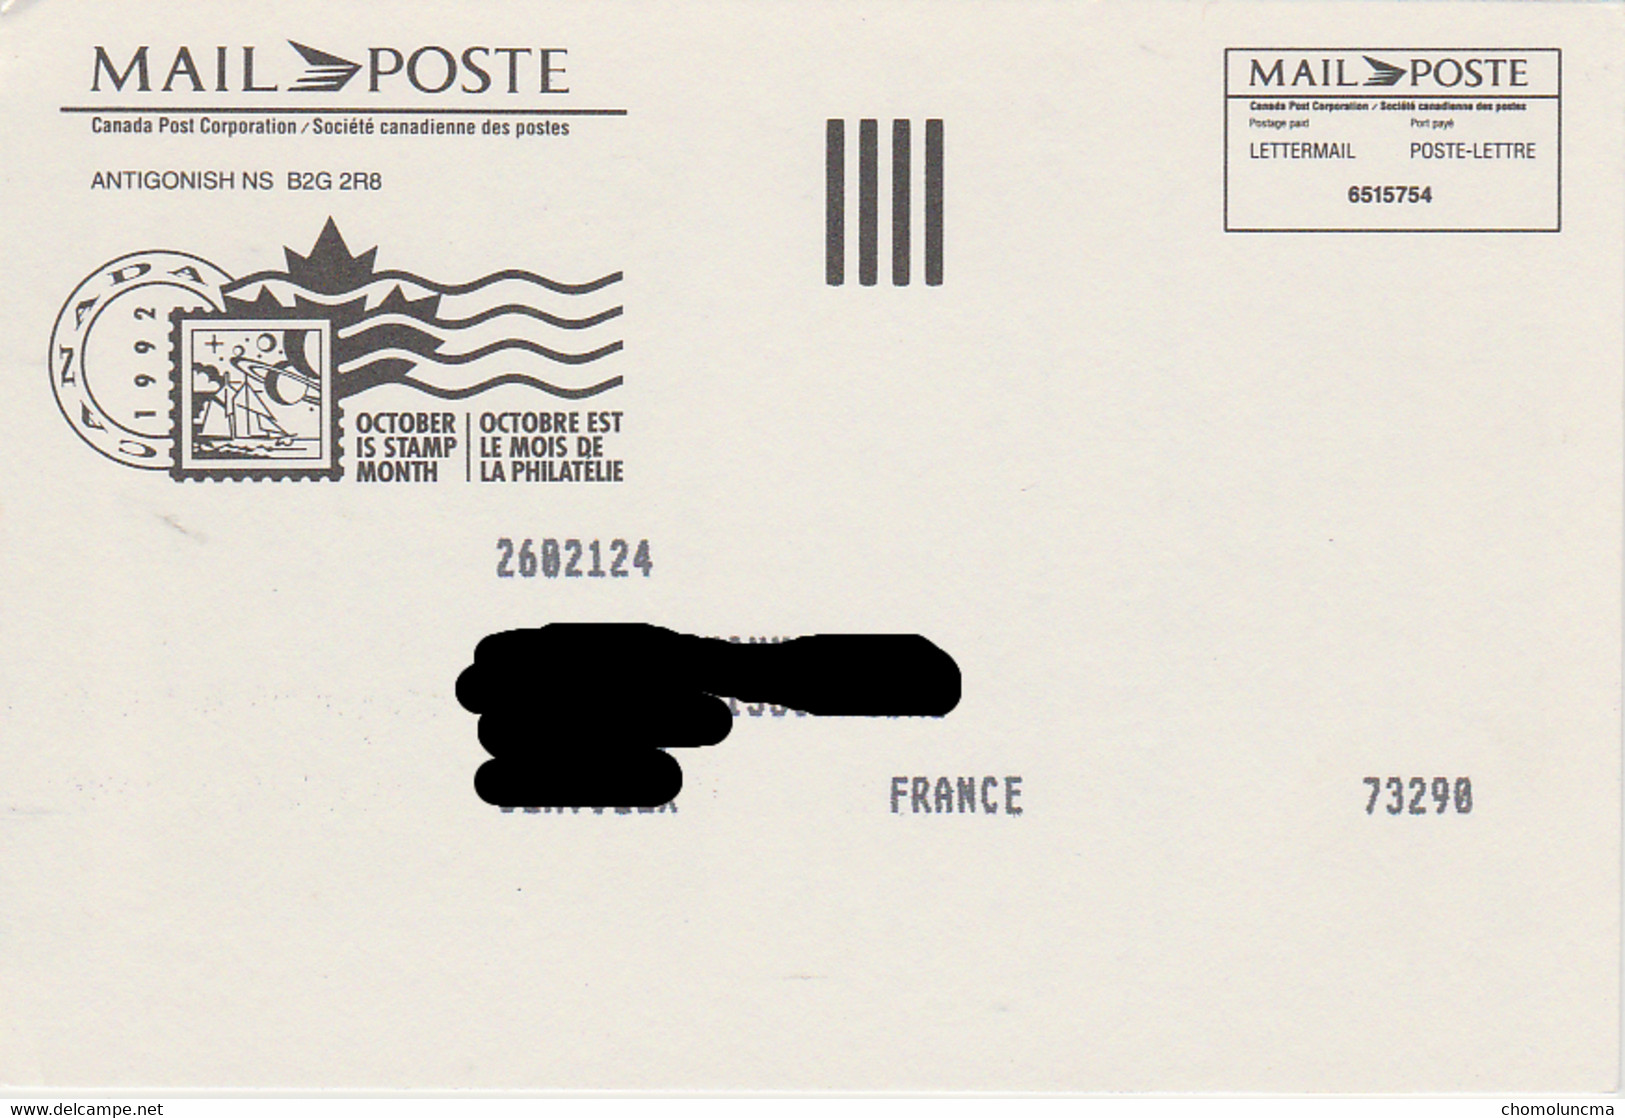 1992 Canada Post Letter Mail Presenting Poste Lettre En Primeur Order Ordre Roland Michener - Postal History